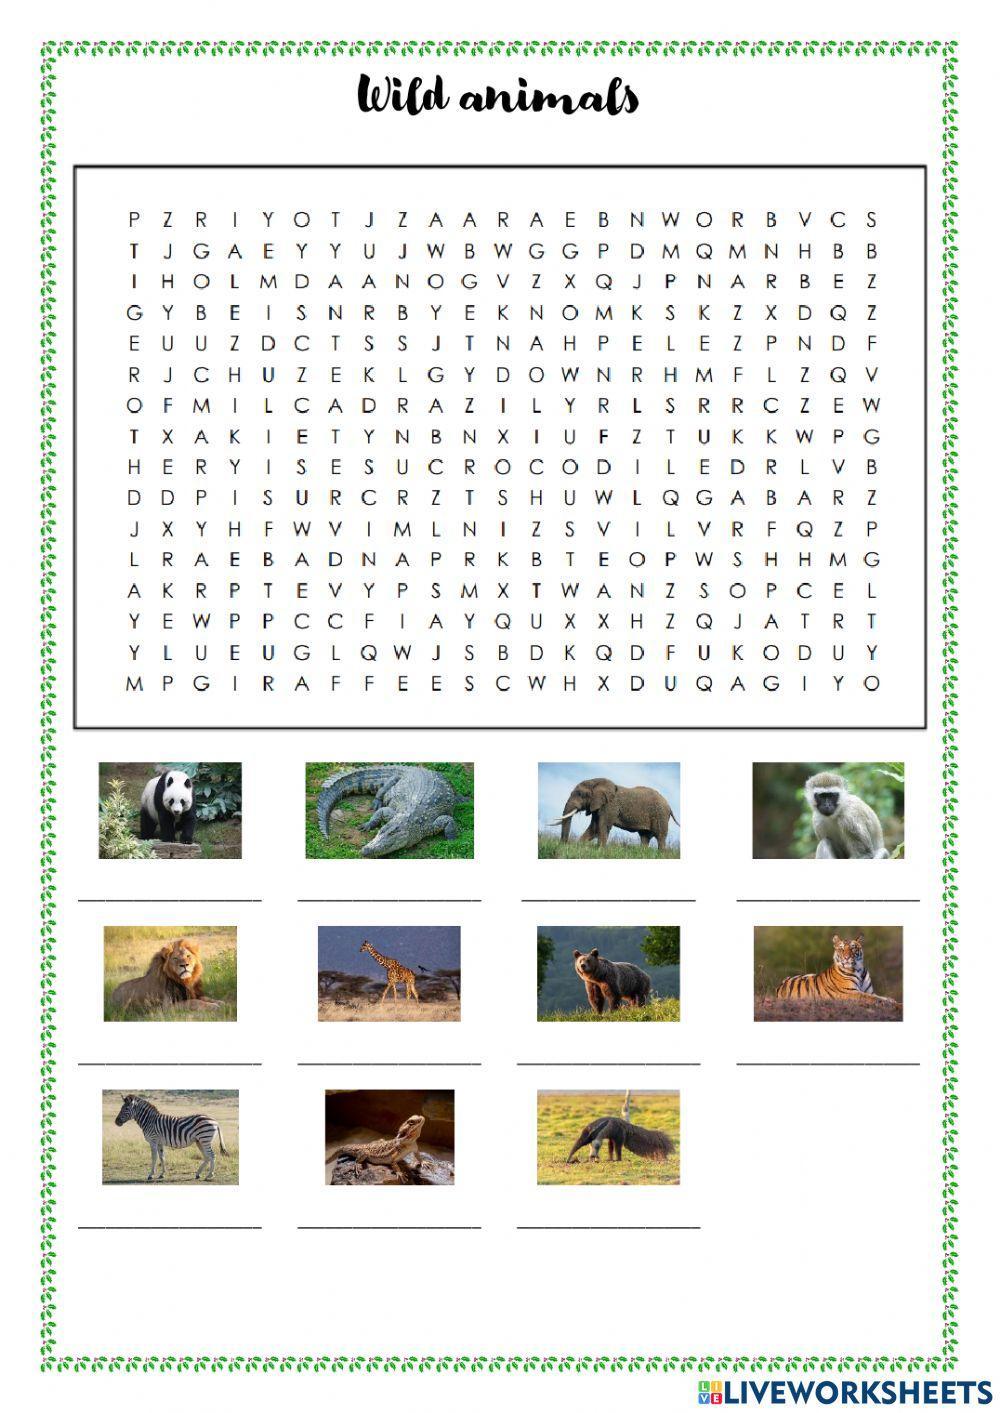 Wild animals - wordsearch & crosswords